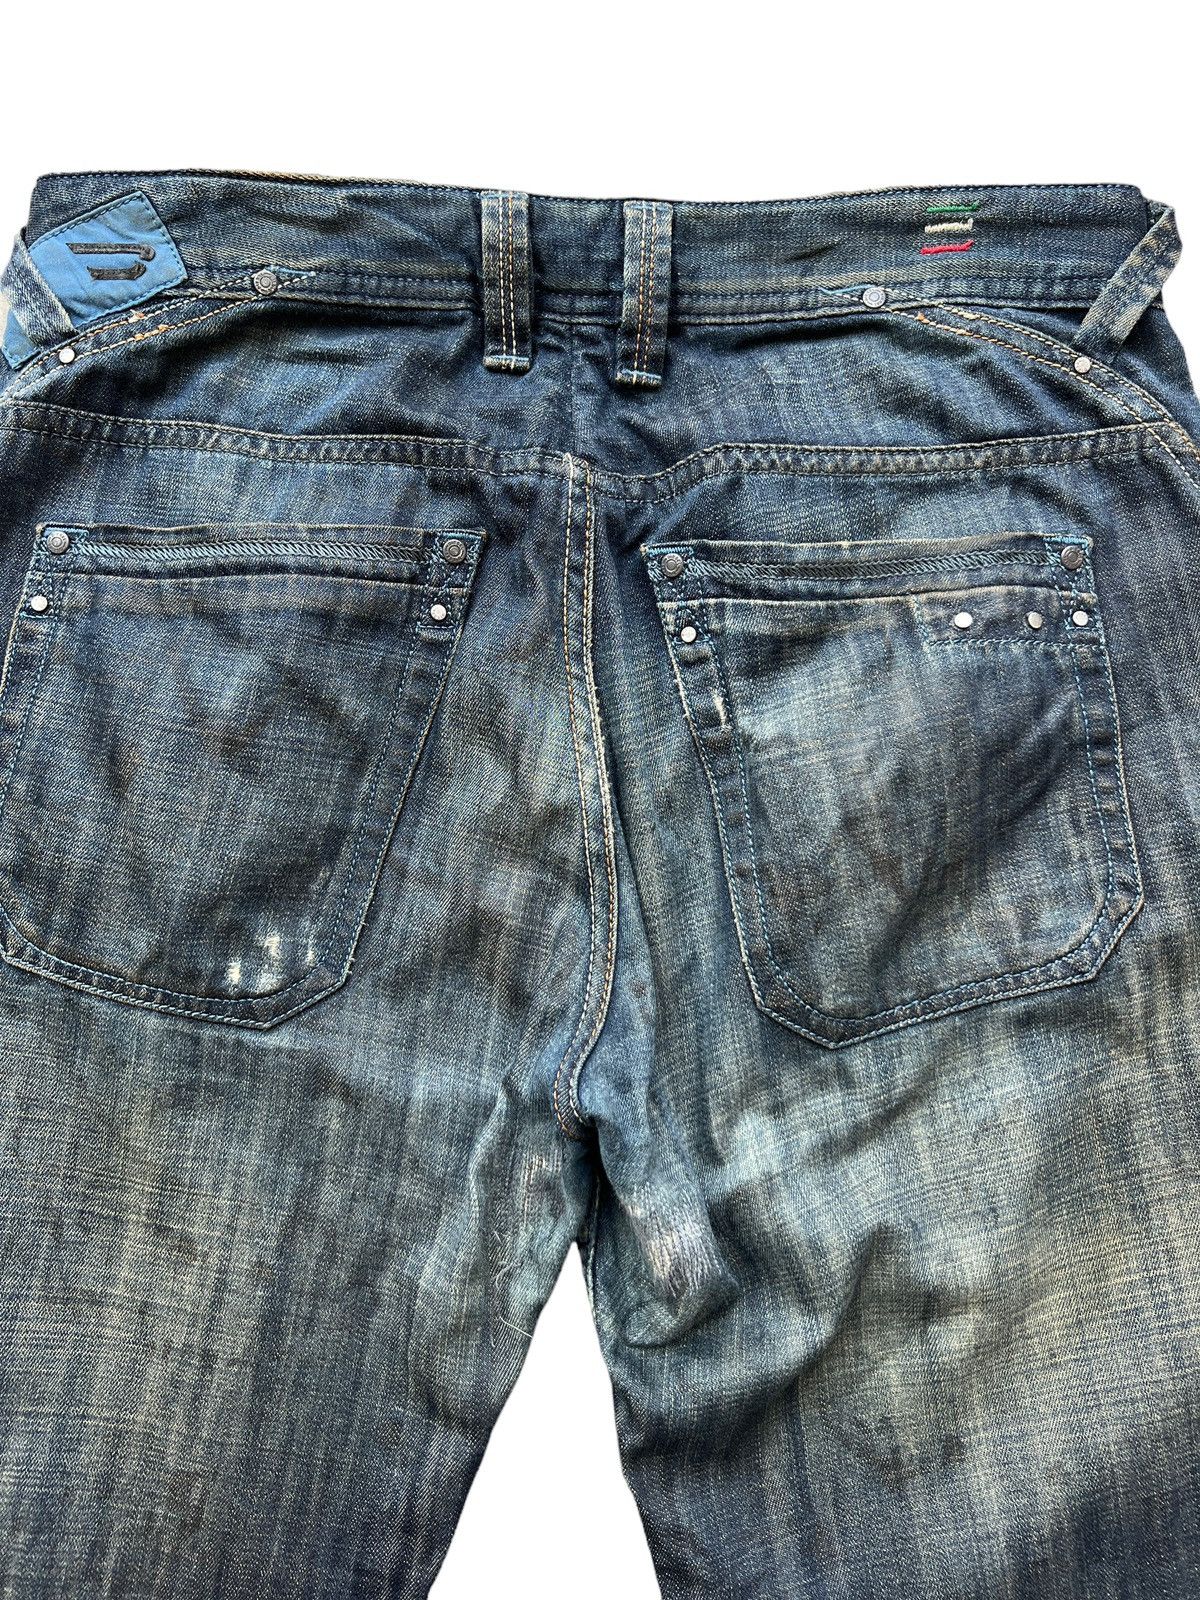 Vintage Diesel Industry Distressed Denim Jeans 34x30 - 7